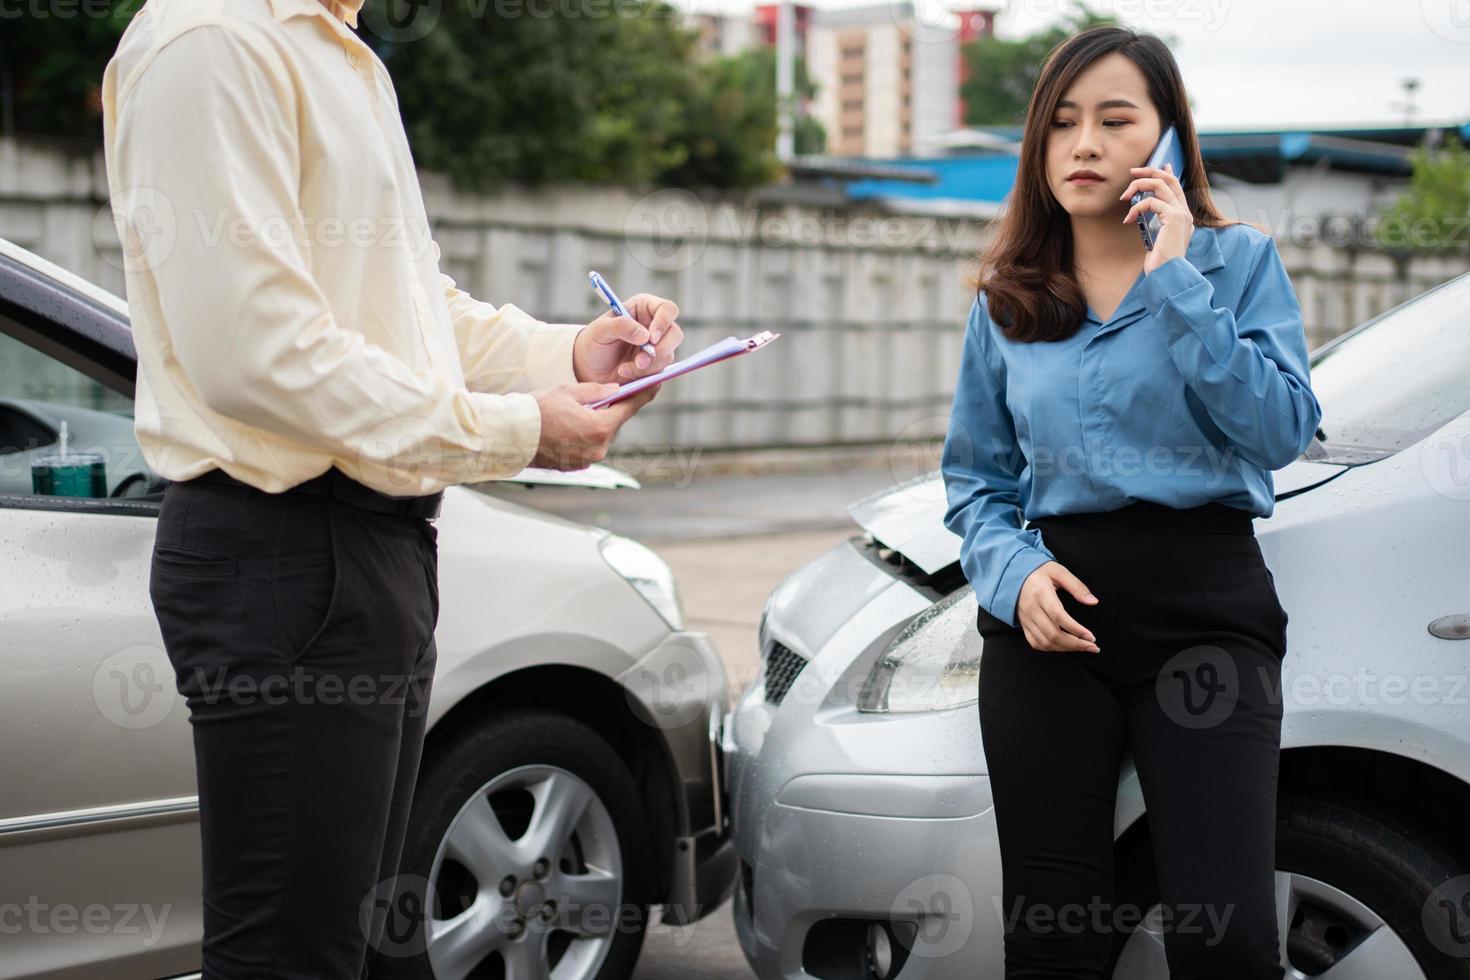 asiatische fahrerinnen sprechen mit dem versicherungsagenten, um das beschädigte auto zu untersuchen und den kunden nach einem unfall auf dem antragsformular zu überprüfen. konzept von versicherungs- und autoverkehrsunfällen. foto